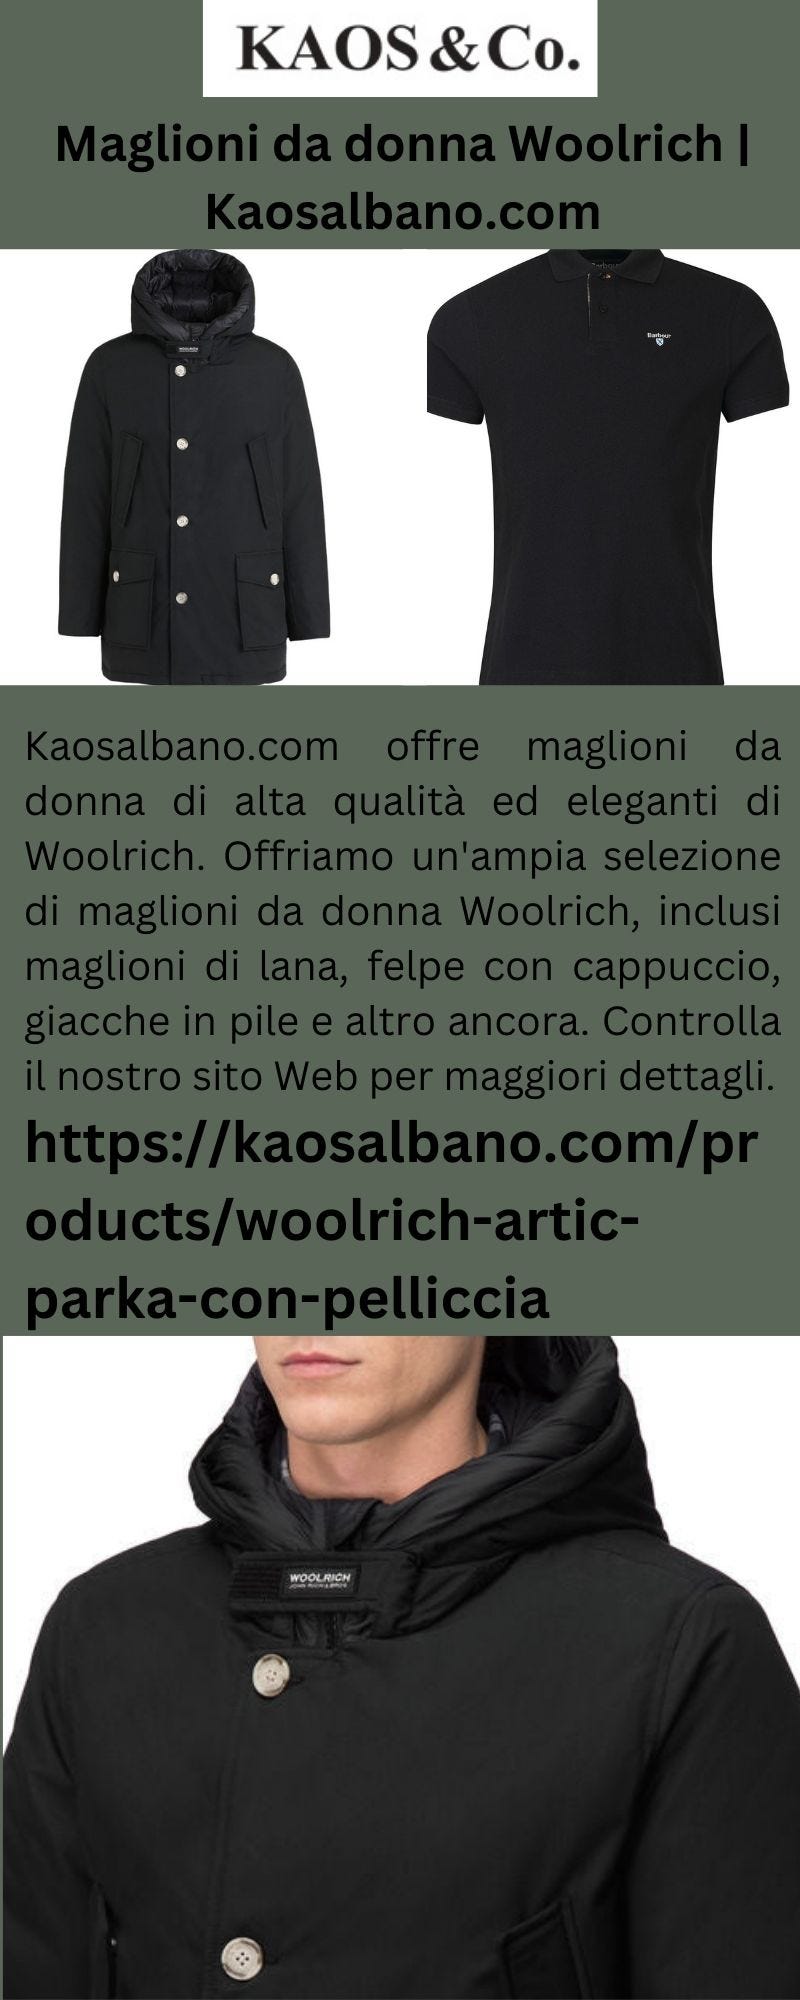 Maglioni da donna Woolrich | Kaosalbano.com - Kaosco - Medium